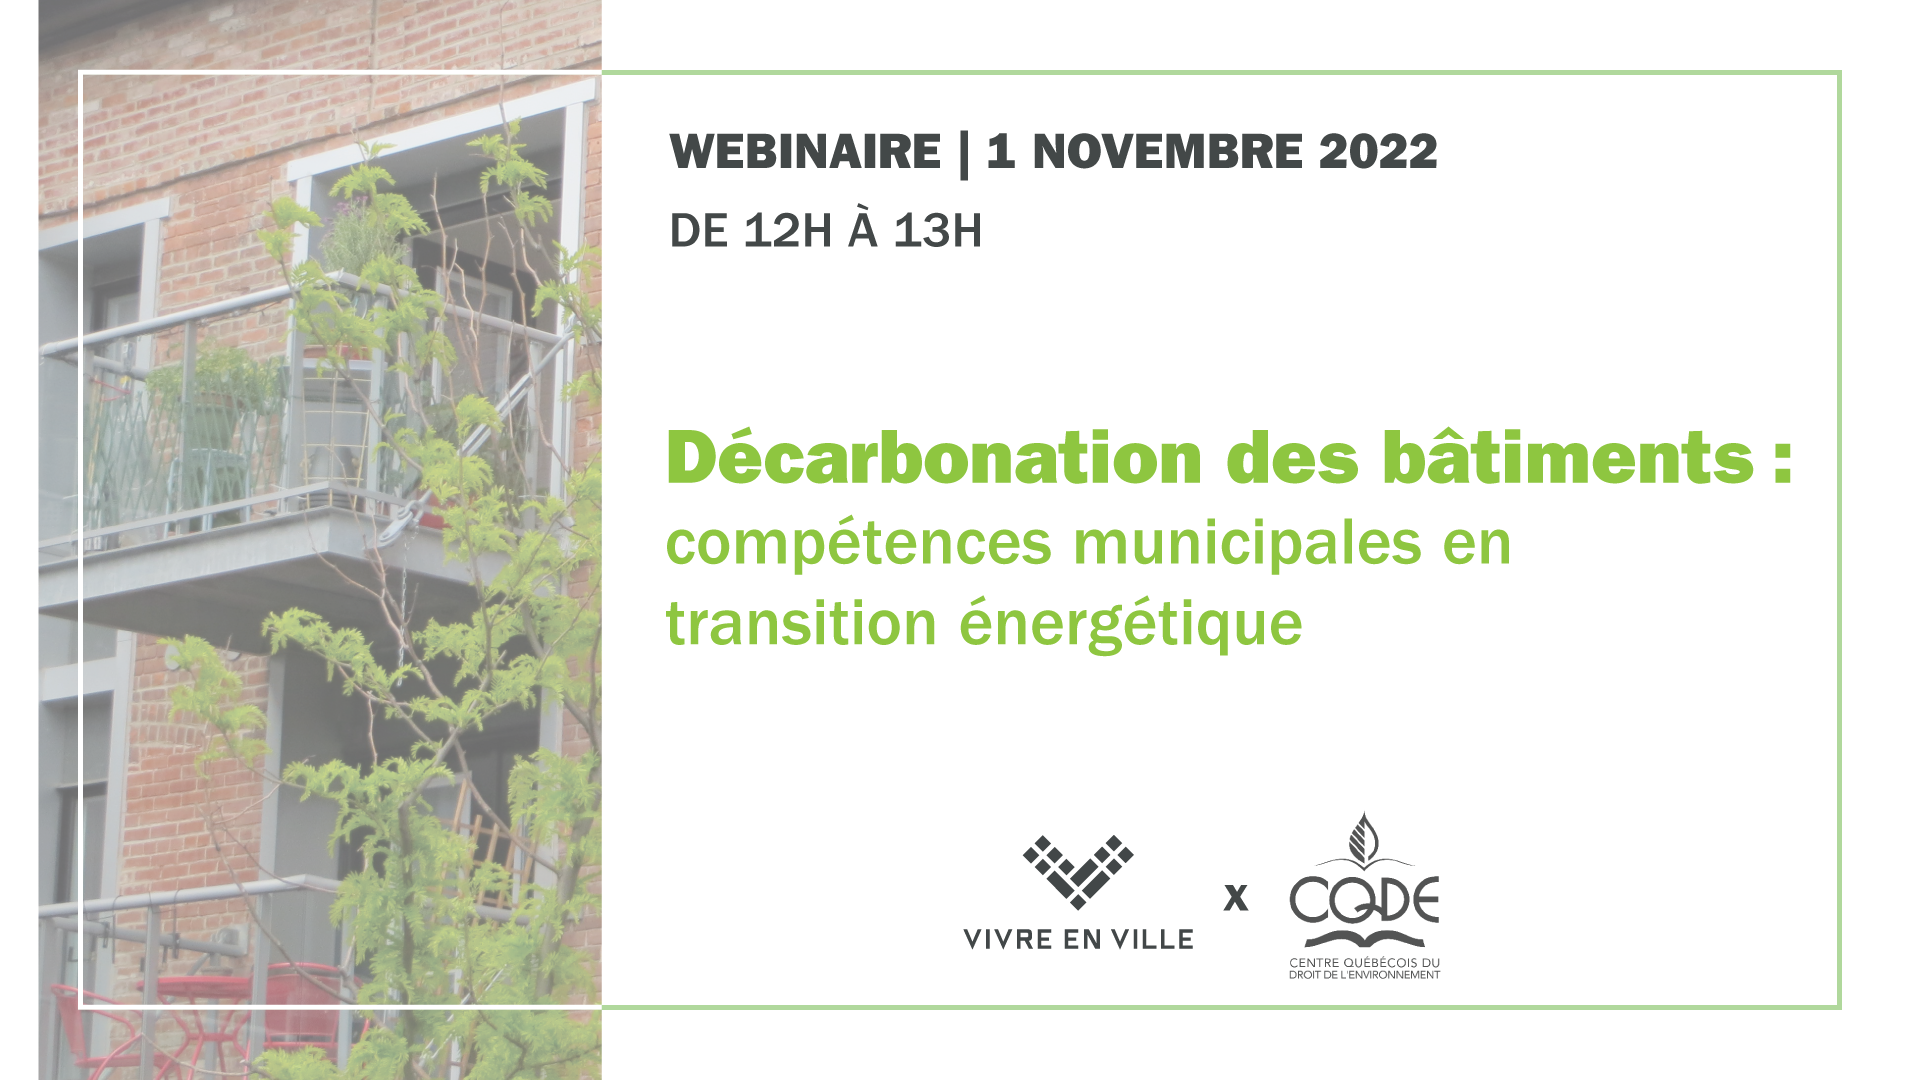 Décarbonation des bâtiments: Compétences municipales en transition énergétique